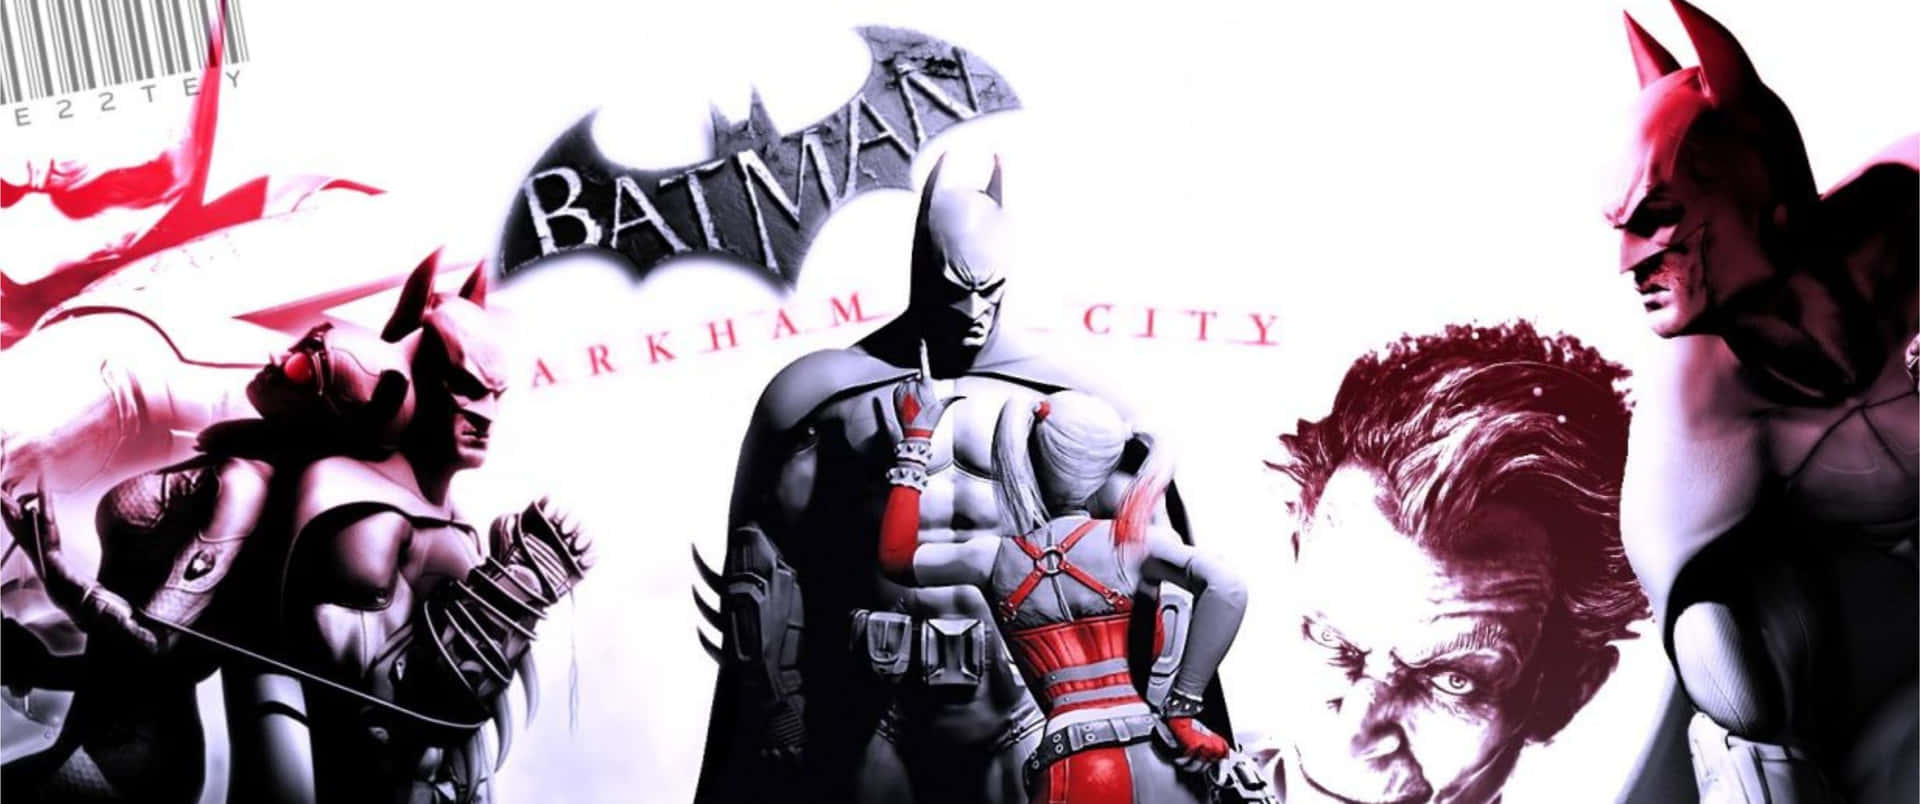 Batmanestá Listo En Su Traje De Arkham City.